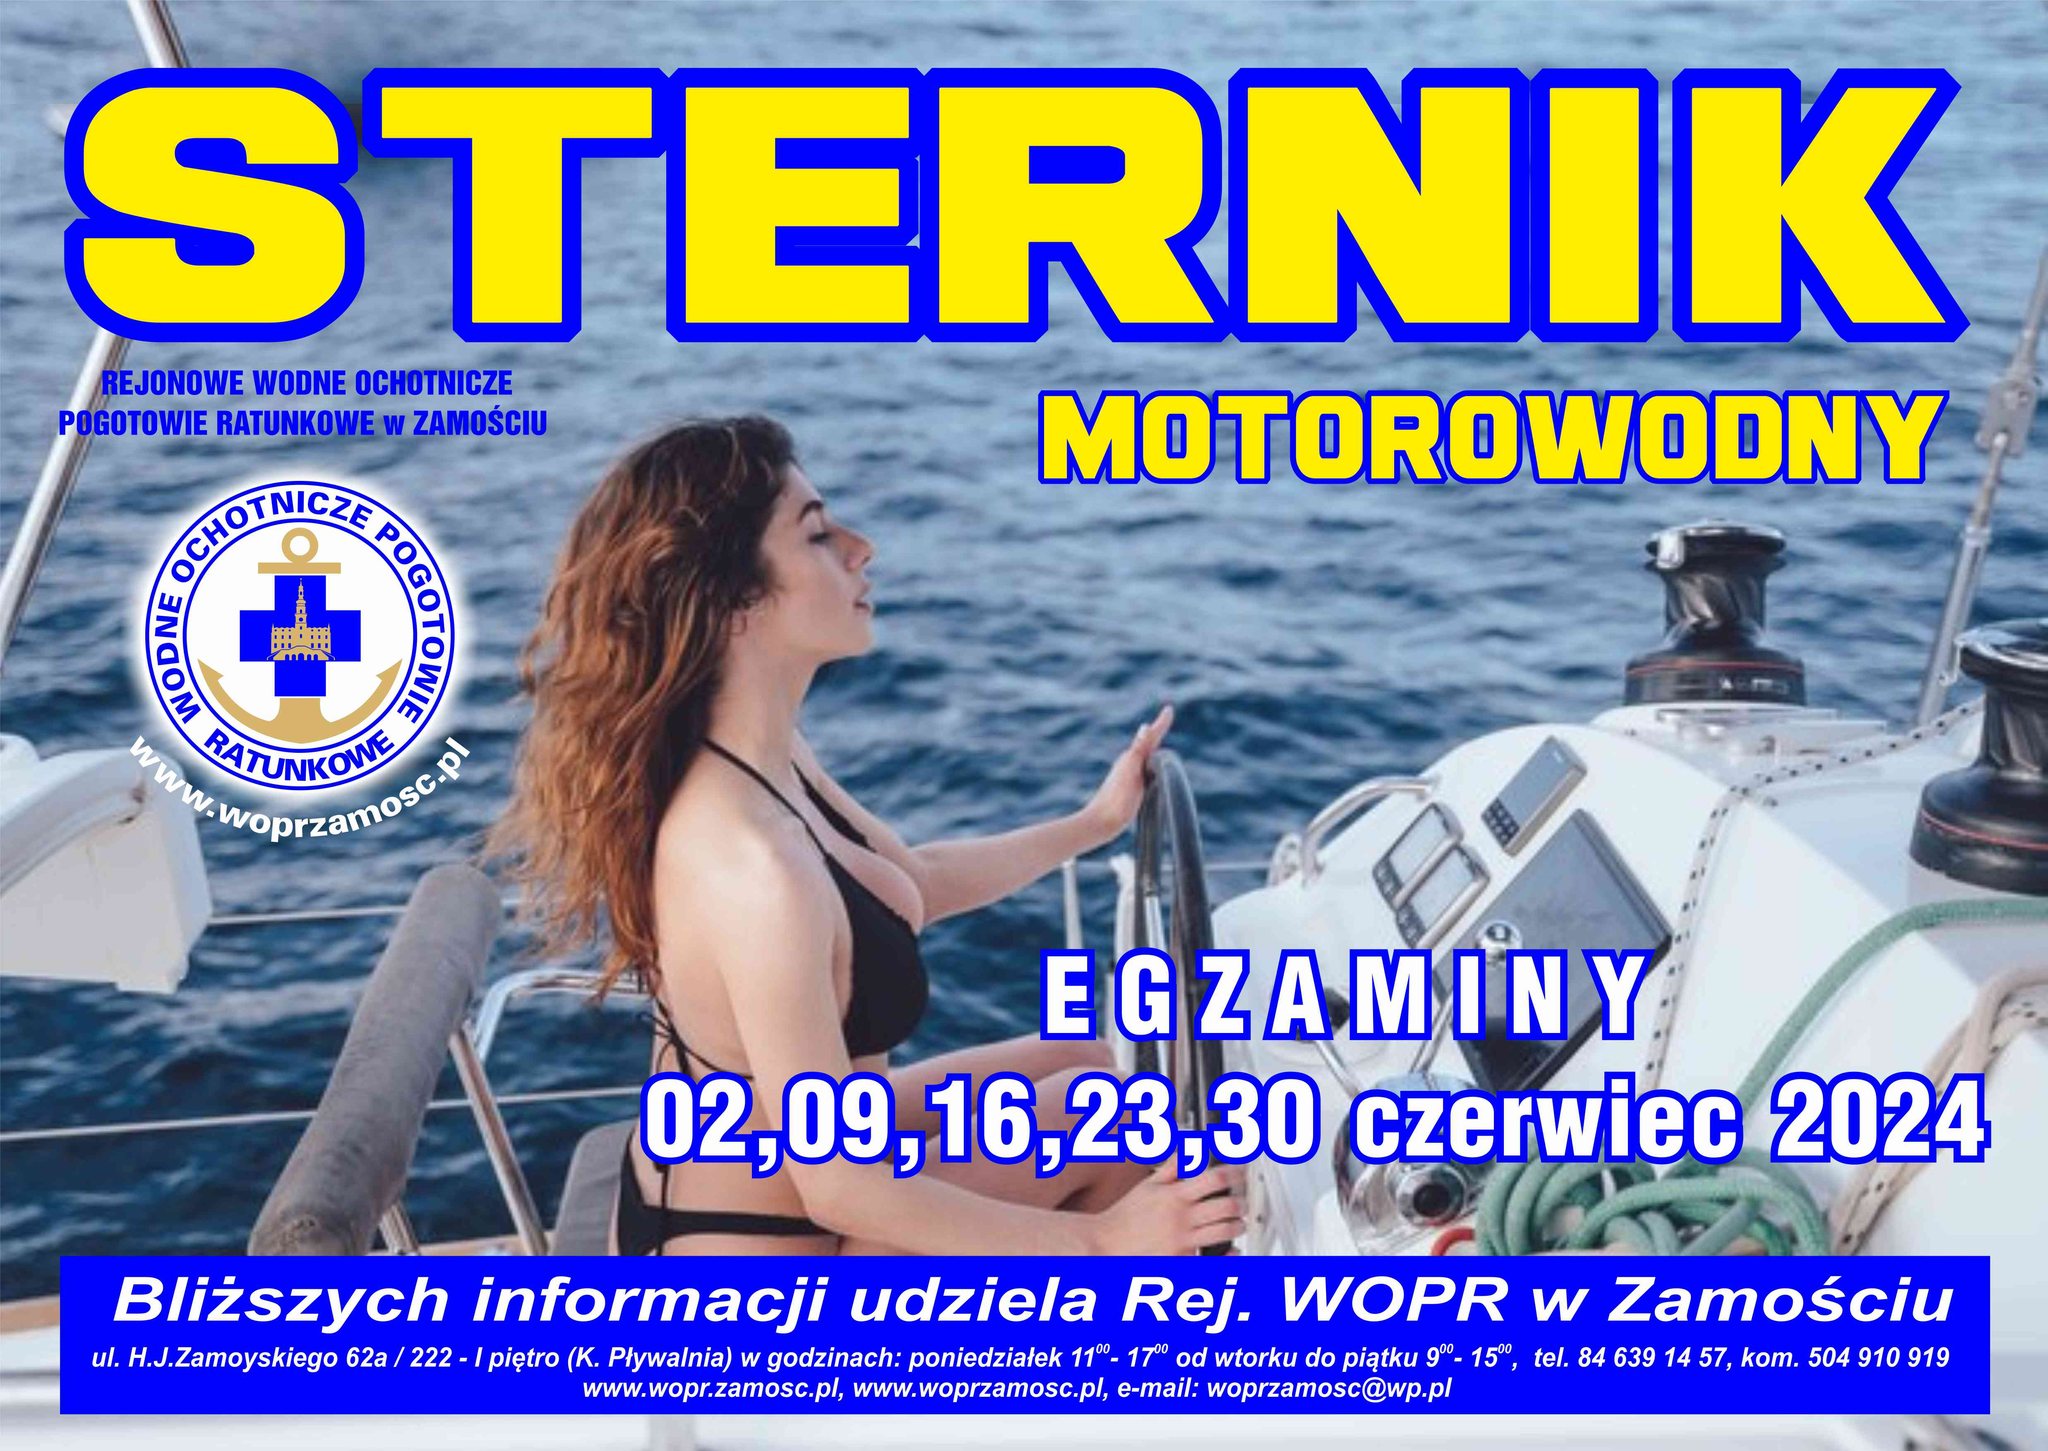 Plakat promujący Kurs sternik motorowdny na czerwiec 2024 rok